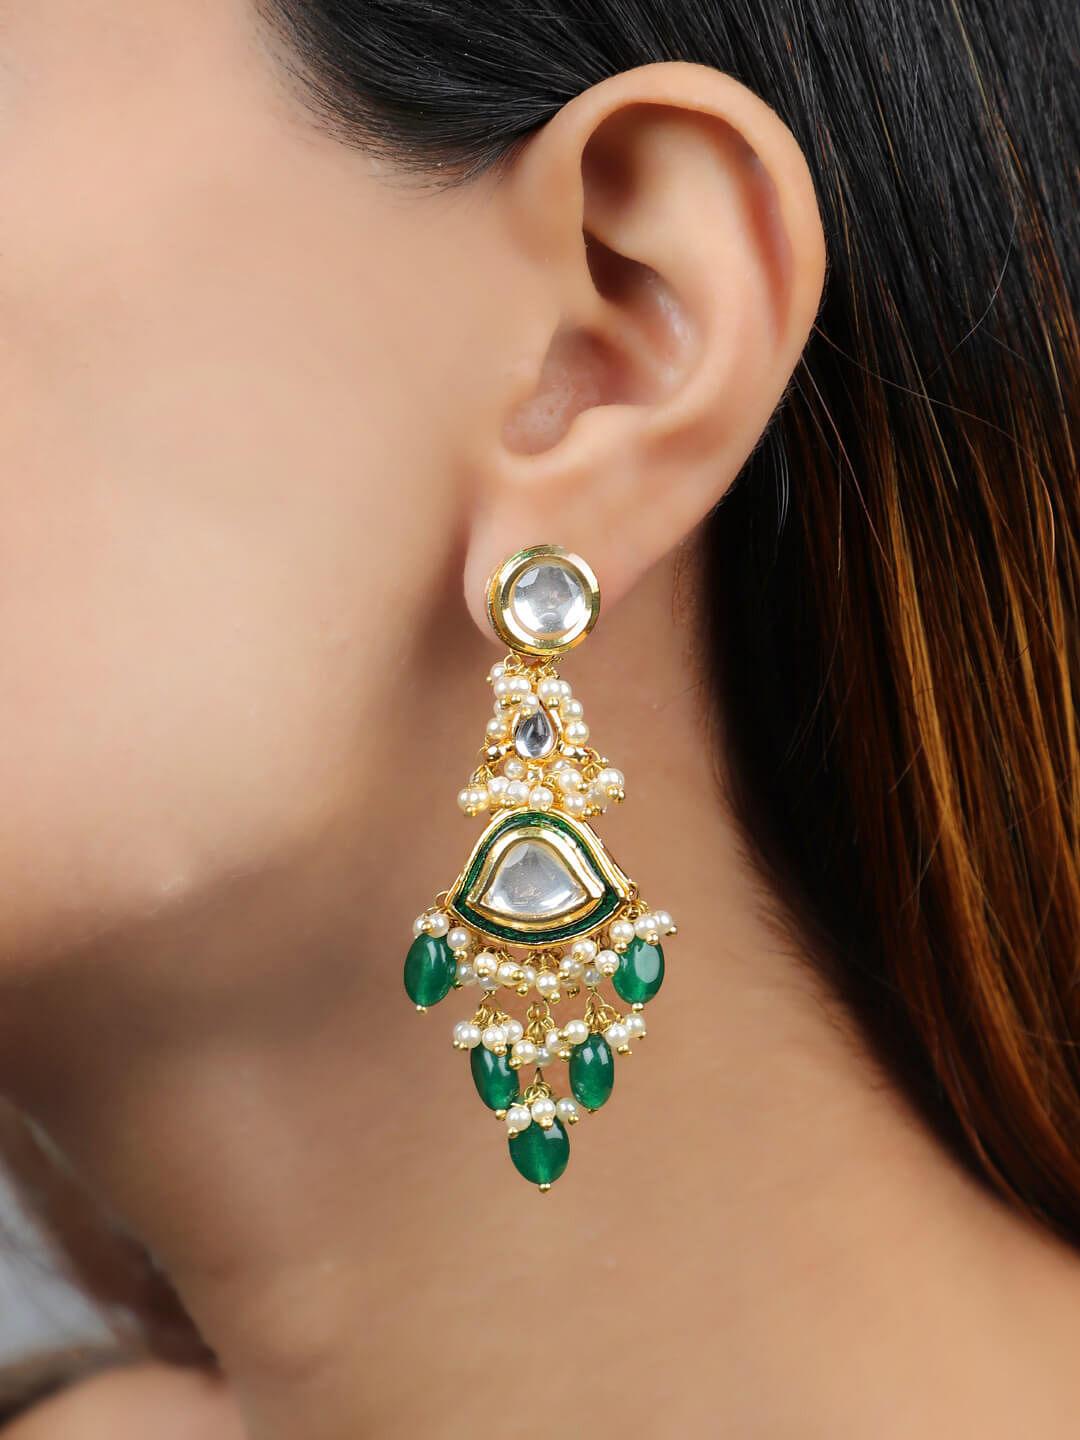 Pinterest | Jewelry drawing, Jewelry design, Kundan earrings